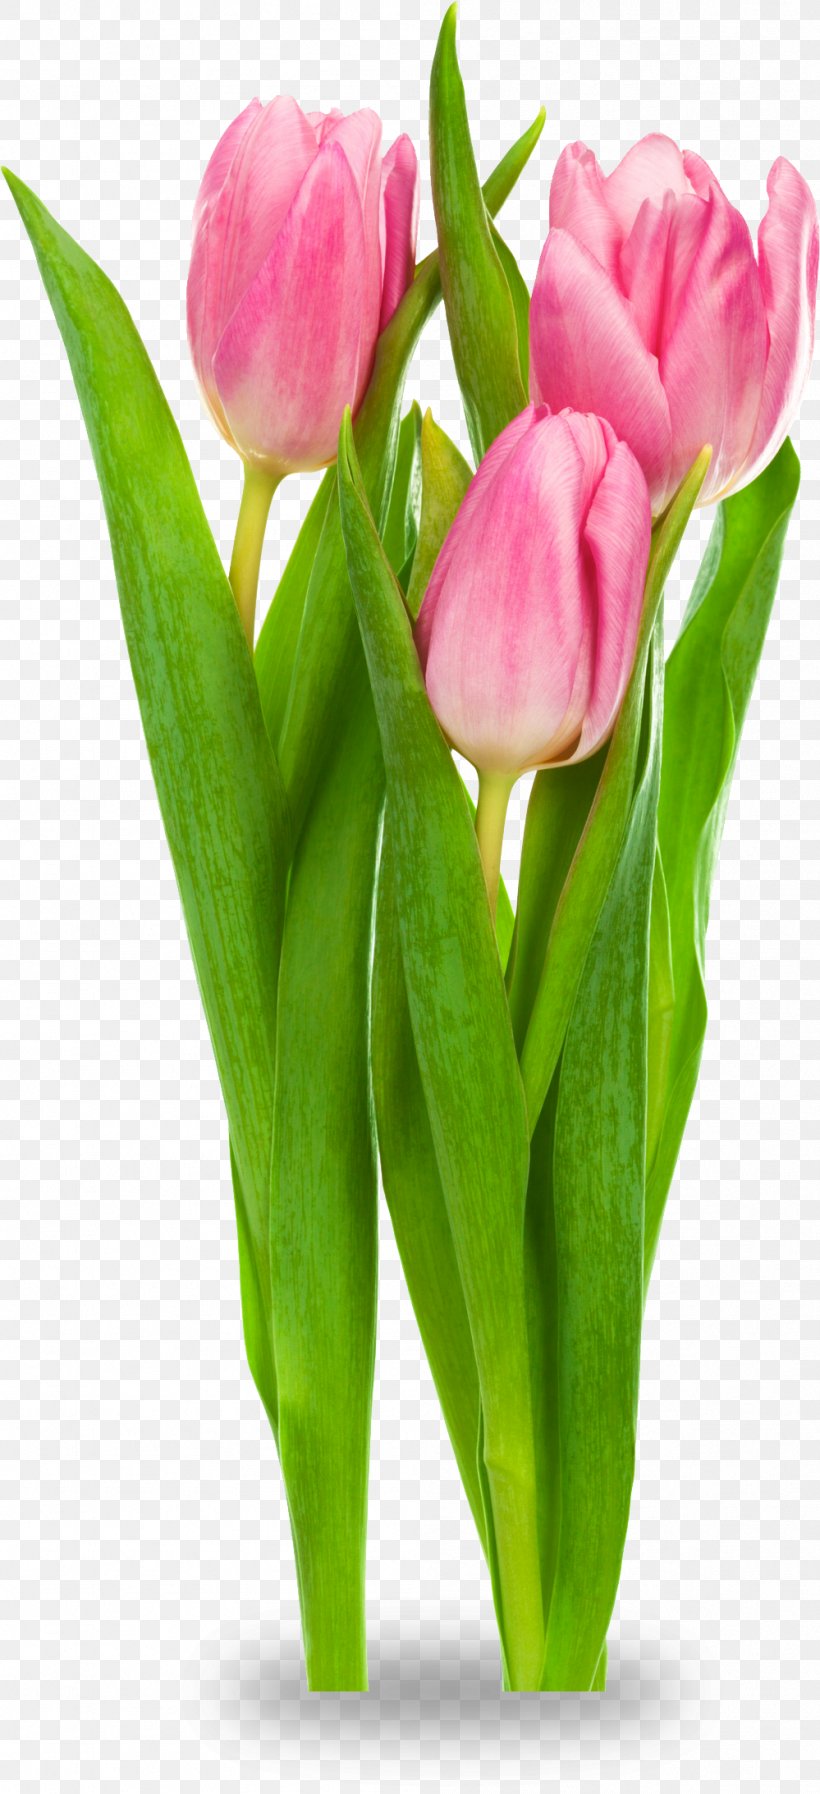 Indira Gandhi Memorial Tulip Garden Tulipa Gesneriana Flower Clip Art, PNG, 999x2186px, Indira Gandhi Memorial Tulip Garden, Bud, Cut Flowers, Floral Design, Floristry Download Free